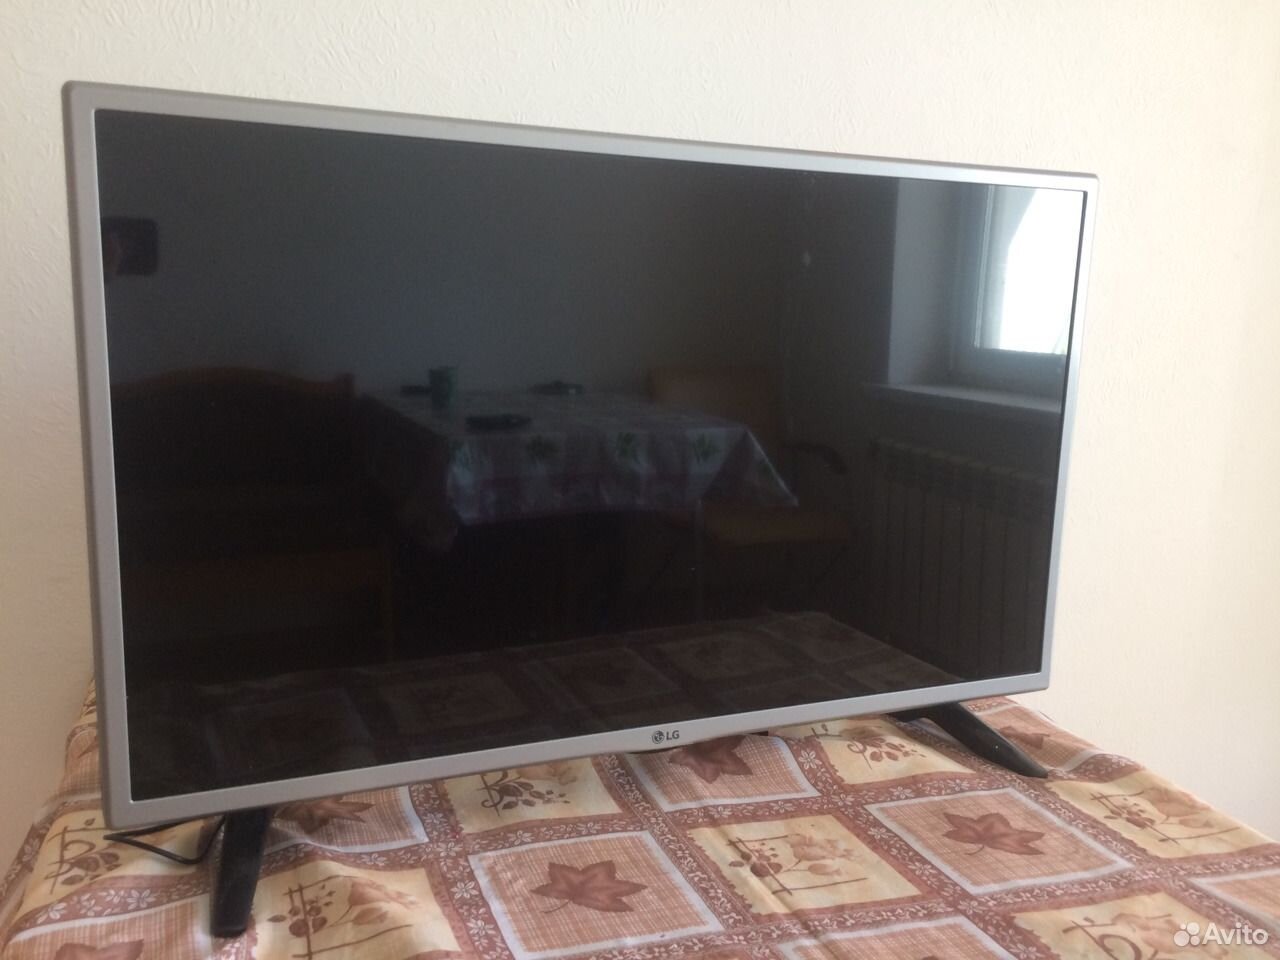 Недорогие телевизоры в брянске